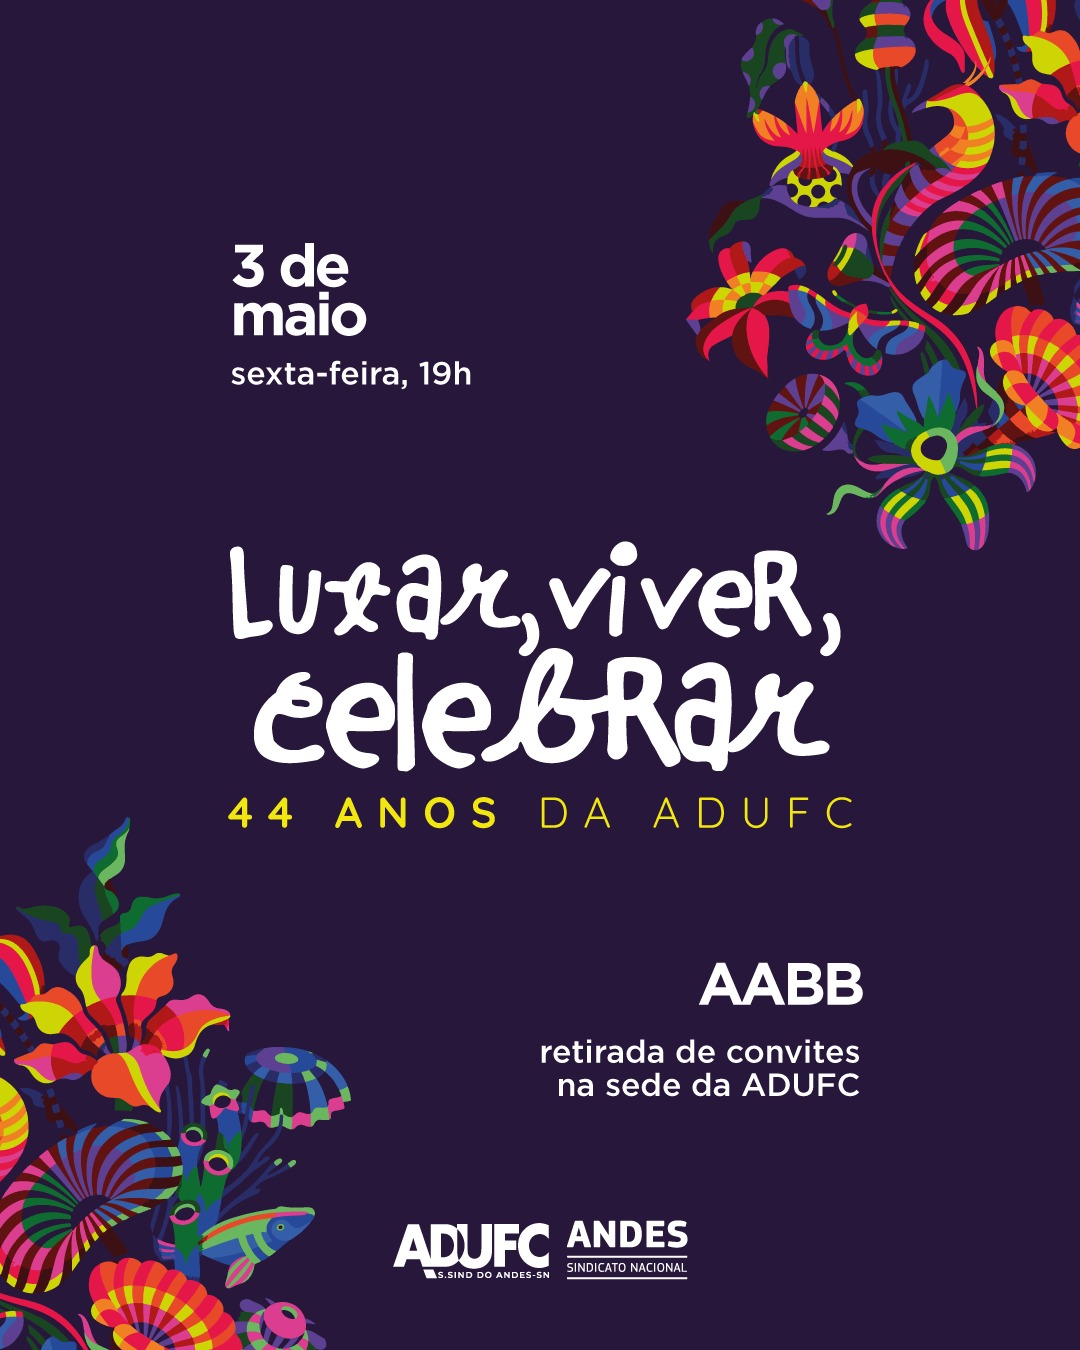 44 ANOS DE LUTA – ADUFC celebra aniversário e reafirma lutas em festa com samba, choro e música amazônica no dia 3 de maio